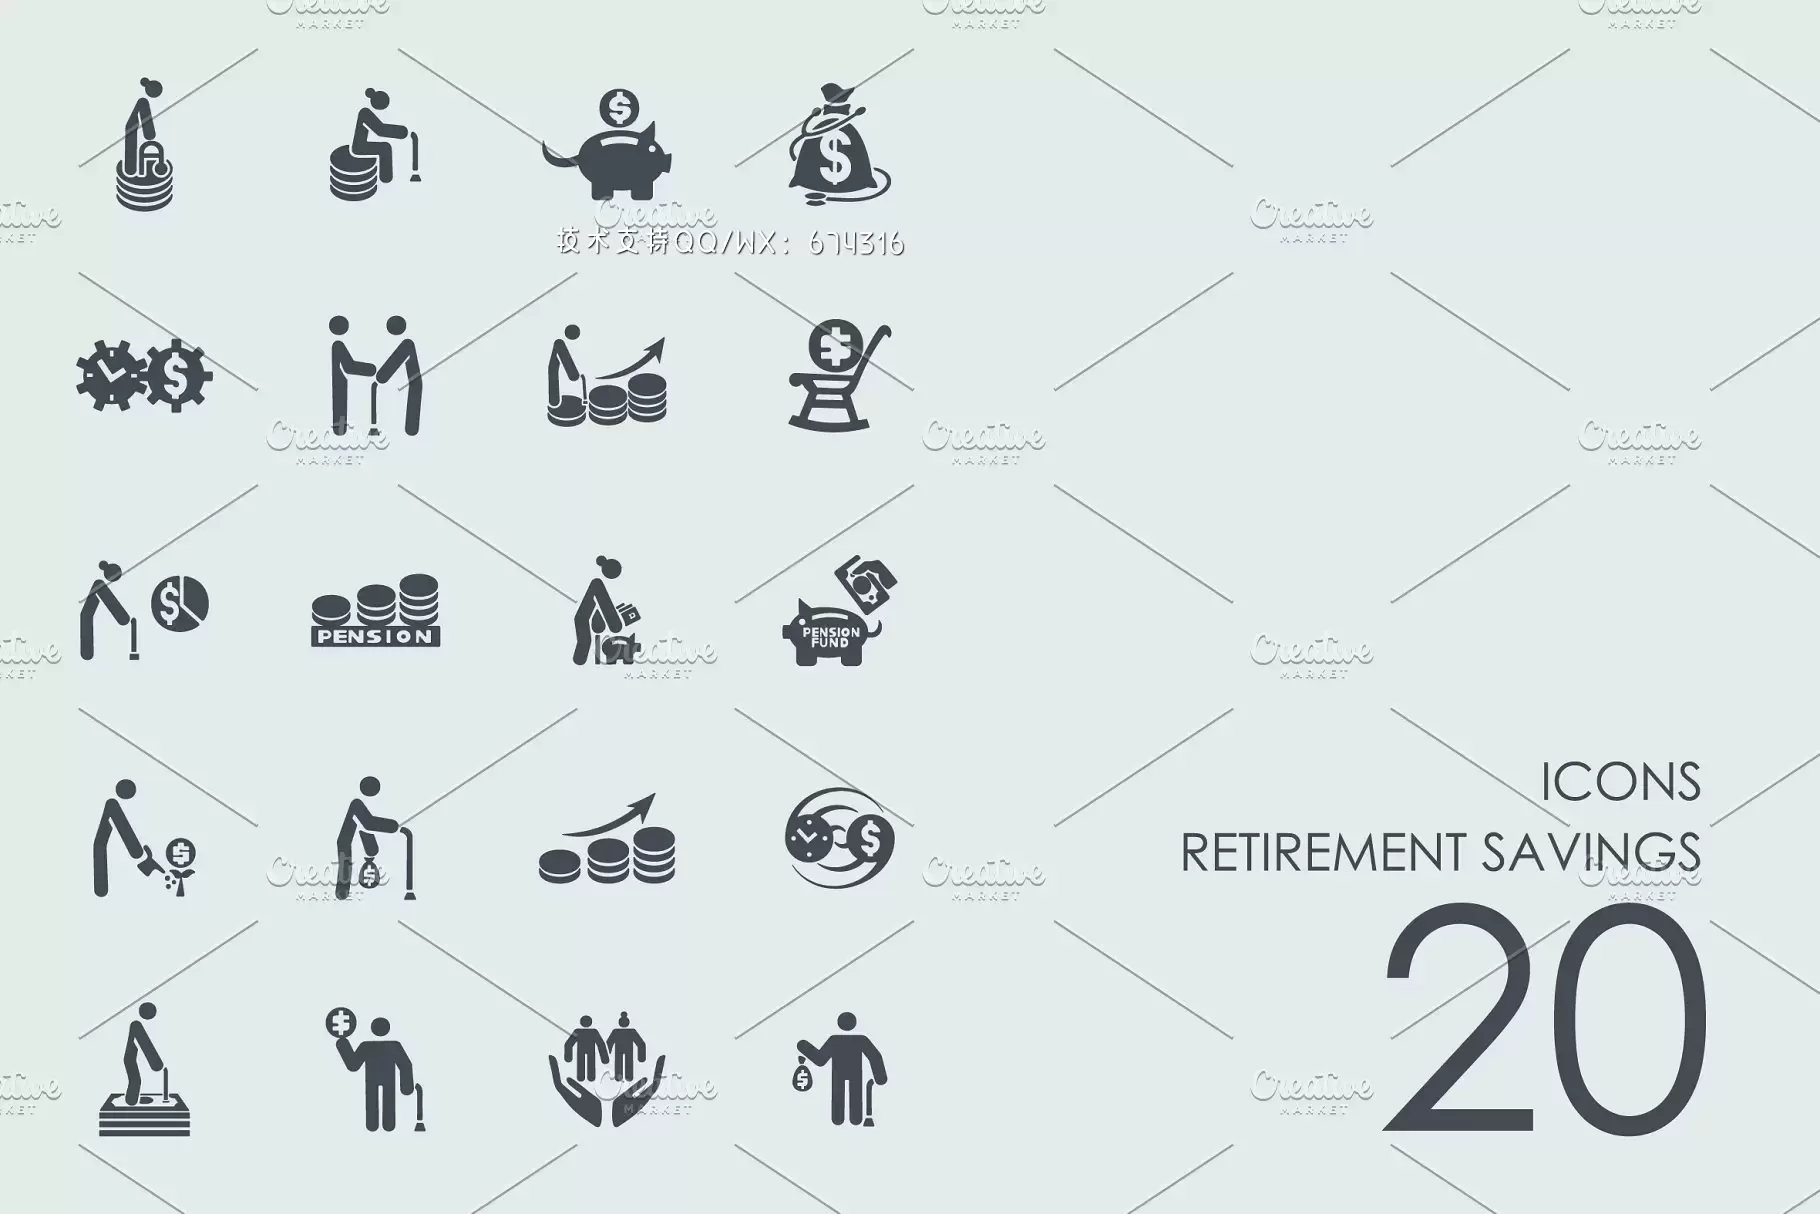 退休储蓄的图标素材 Retirement Savings icons免费下载